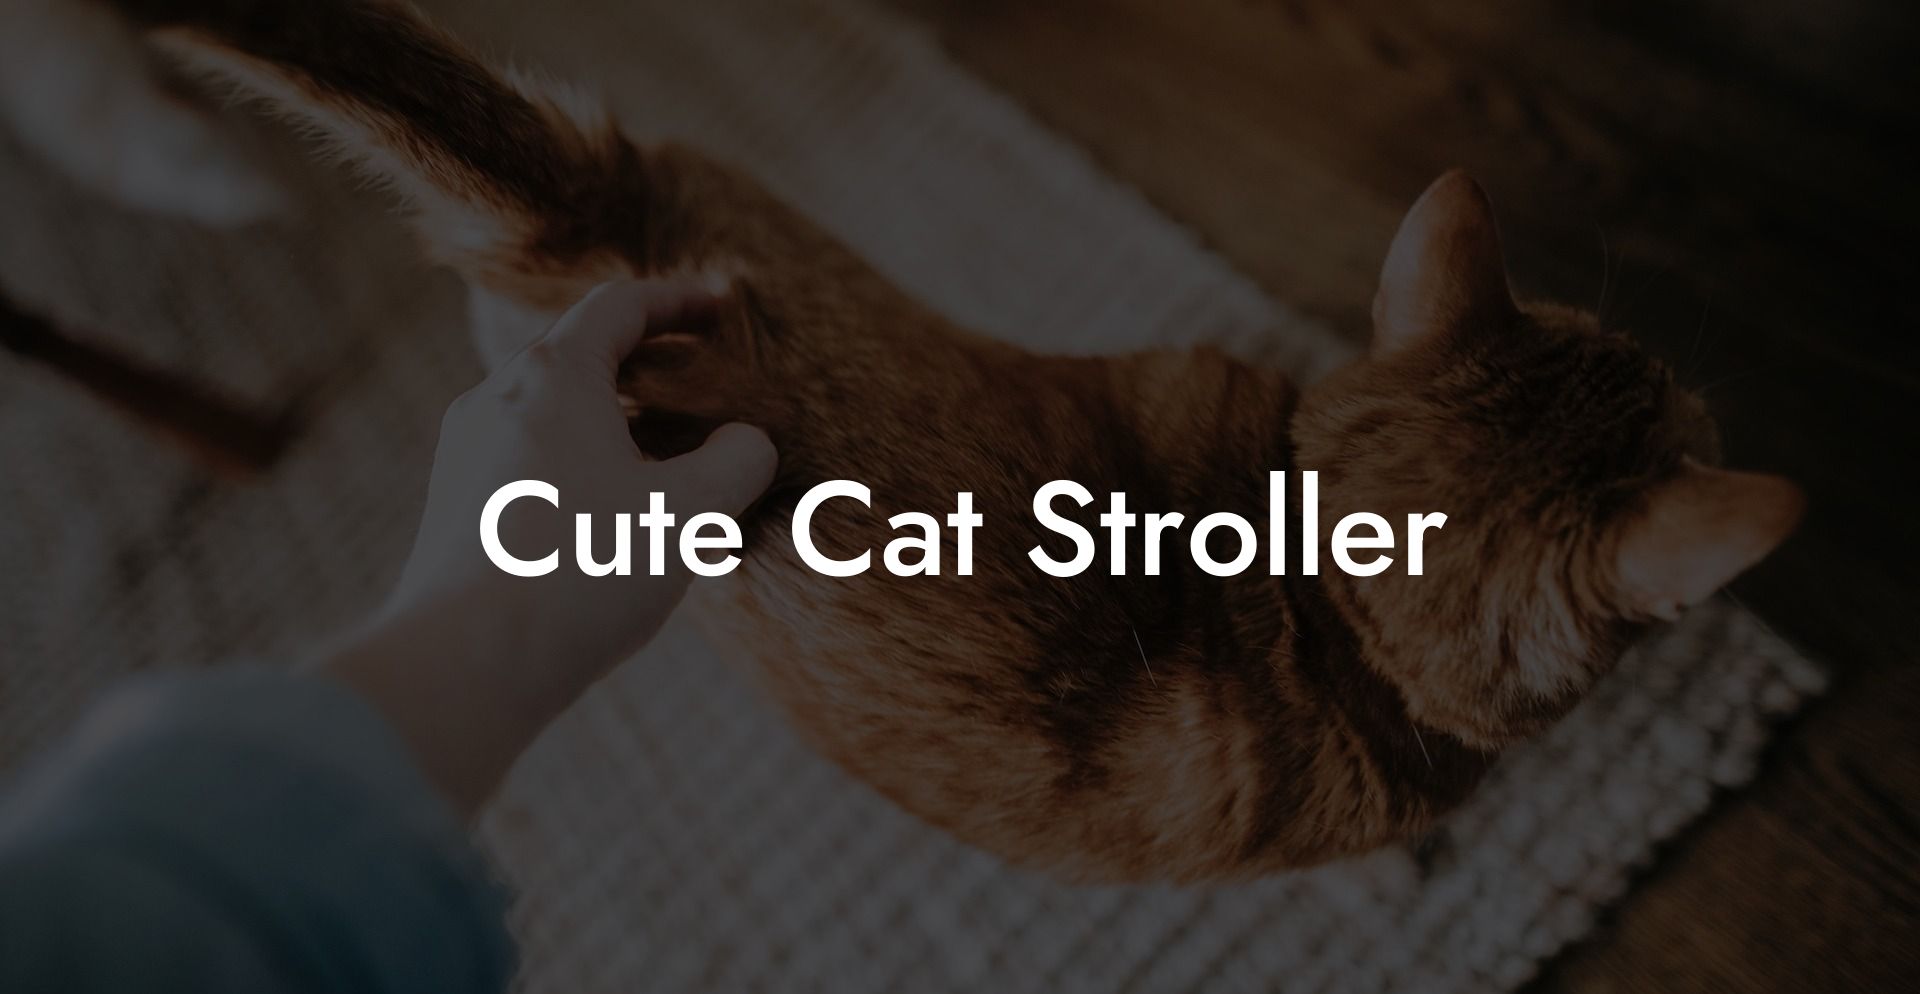 Cute Cat Stroller